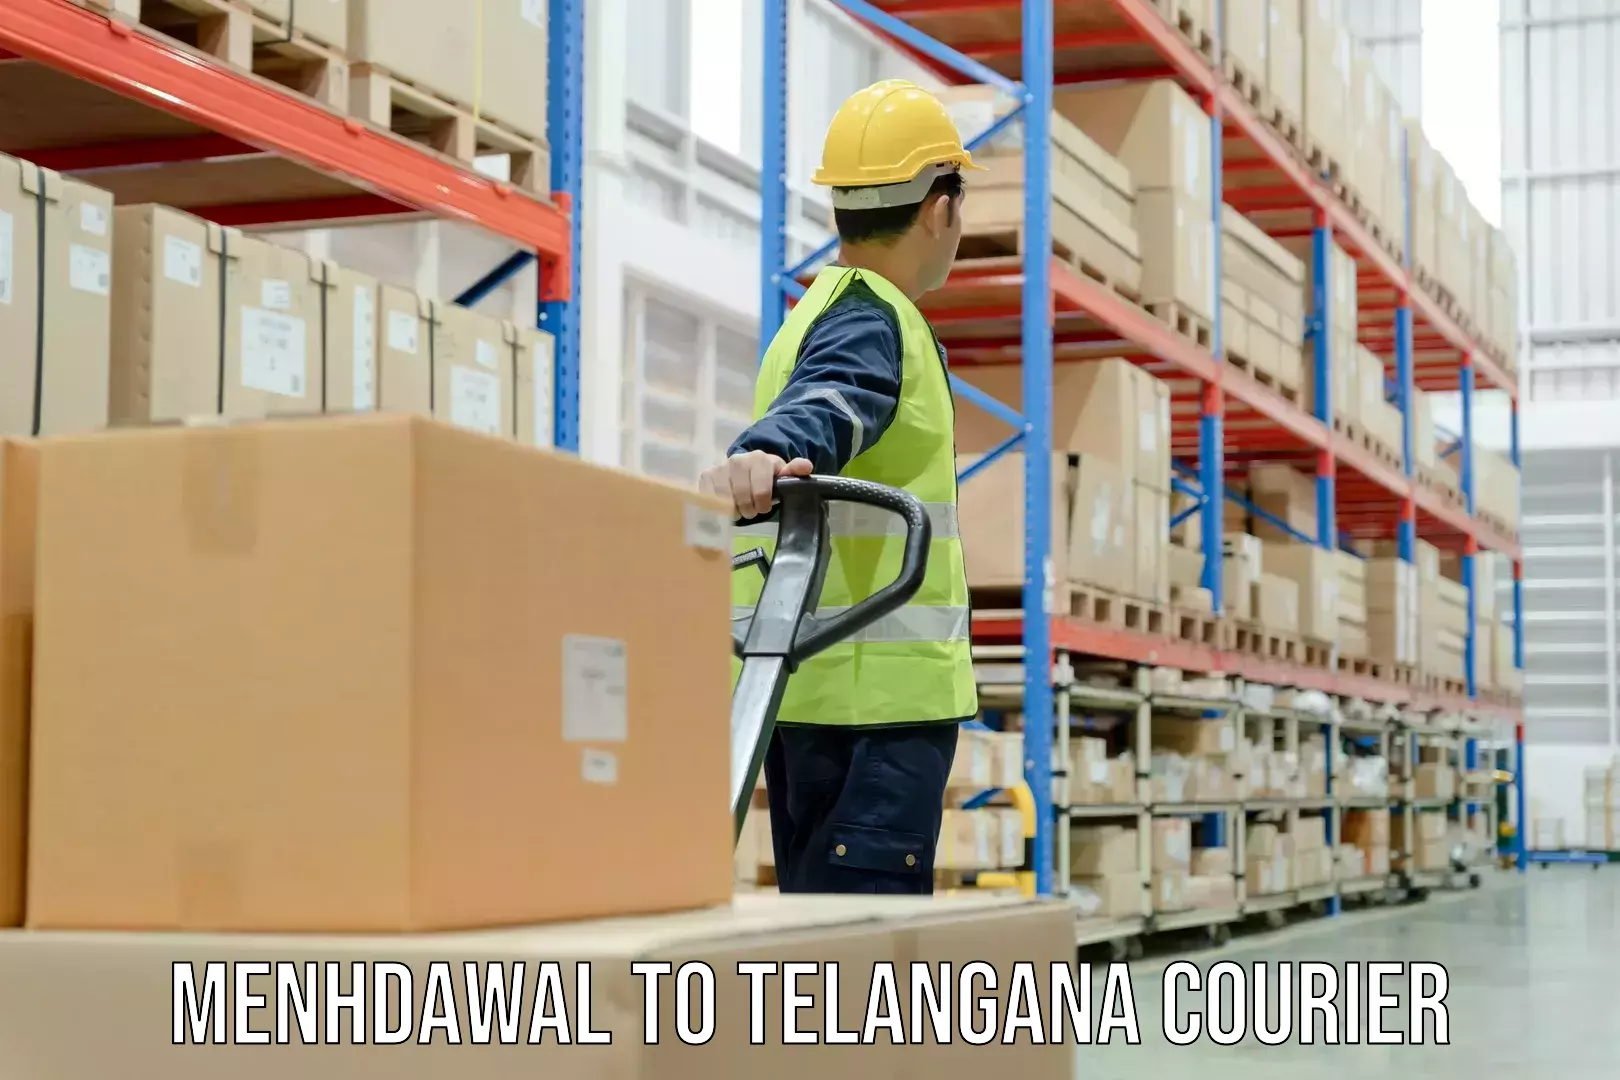 Customer-centric shipping Menhdawal to Telangana